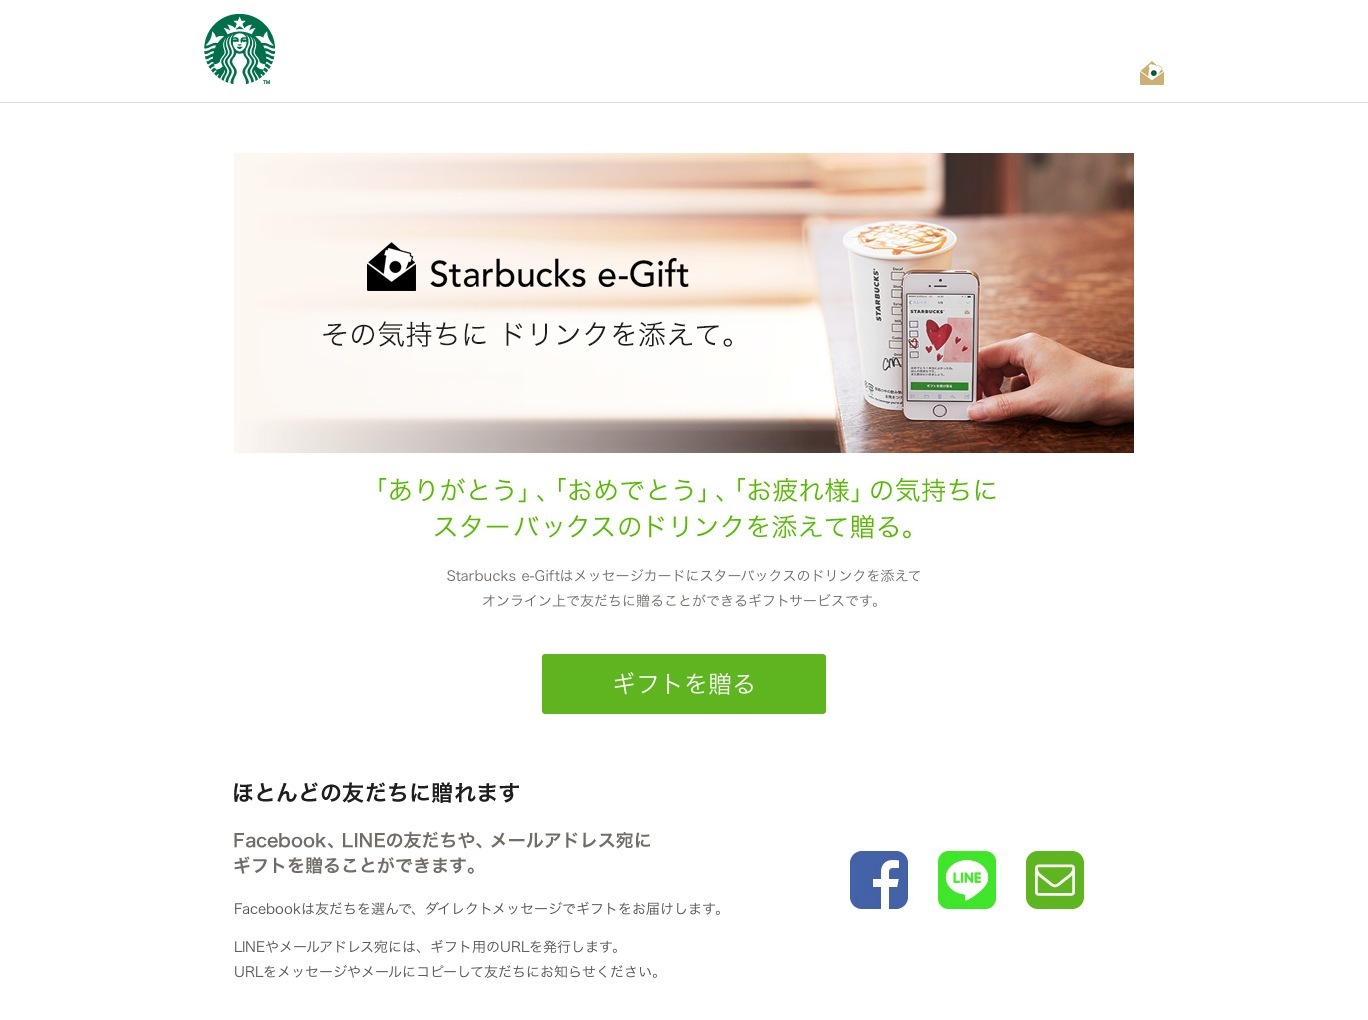 Starbucks e Gift Guide